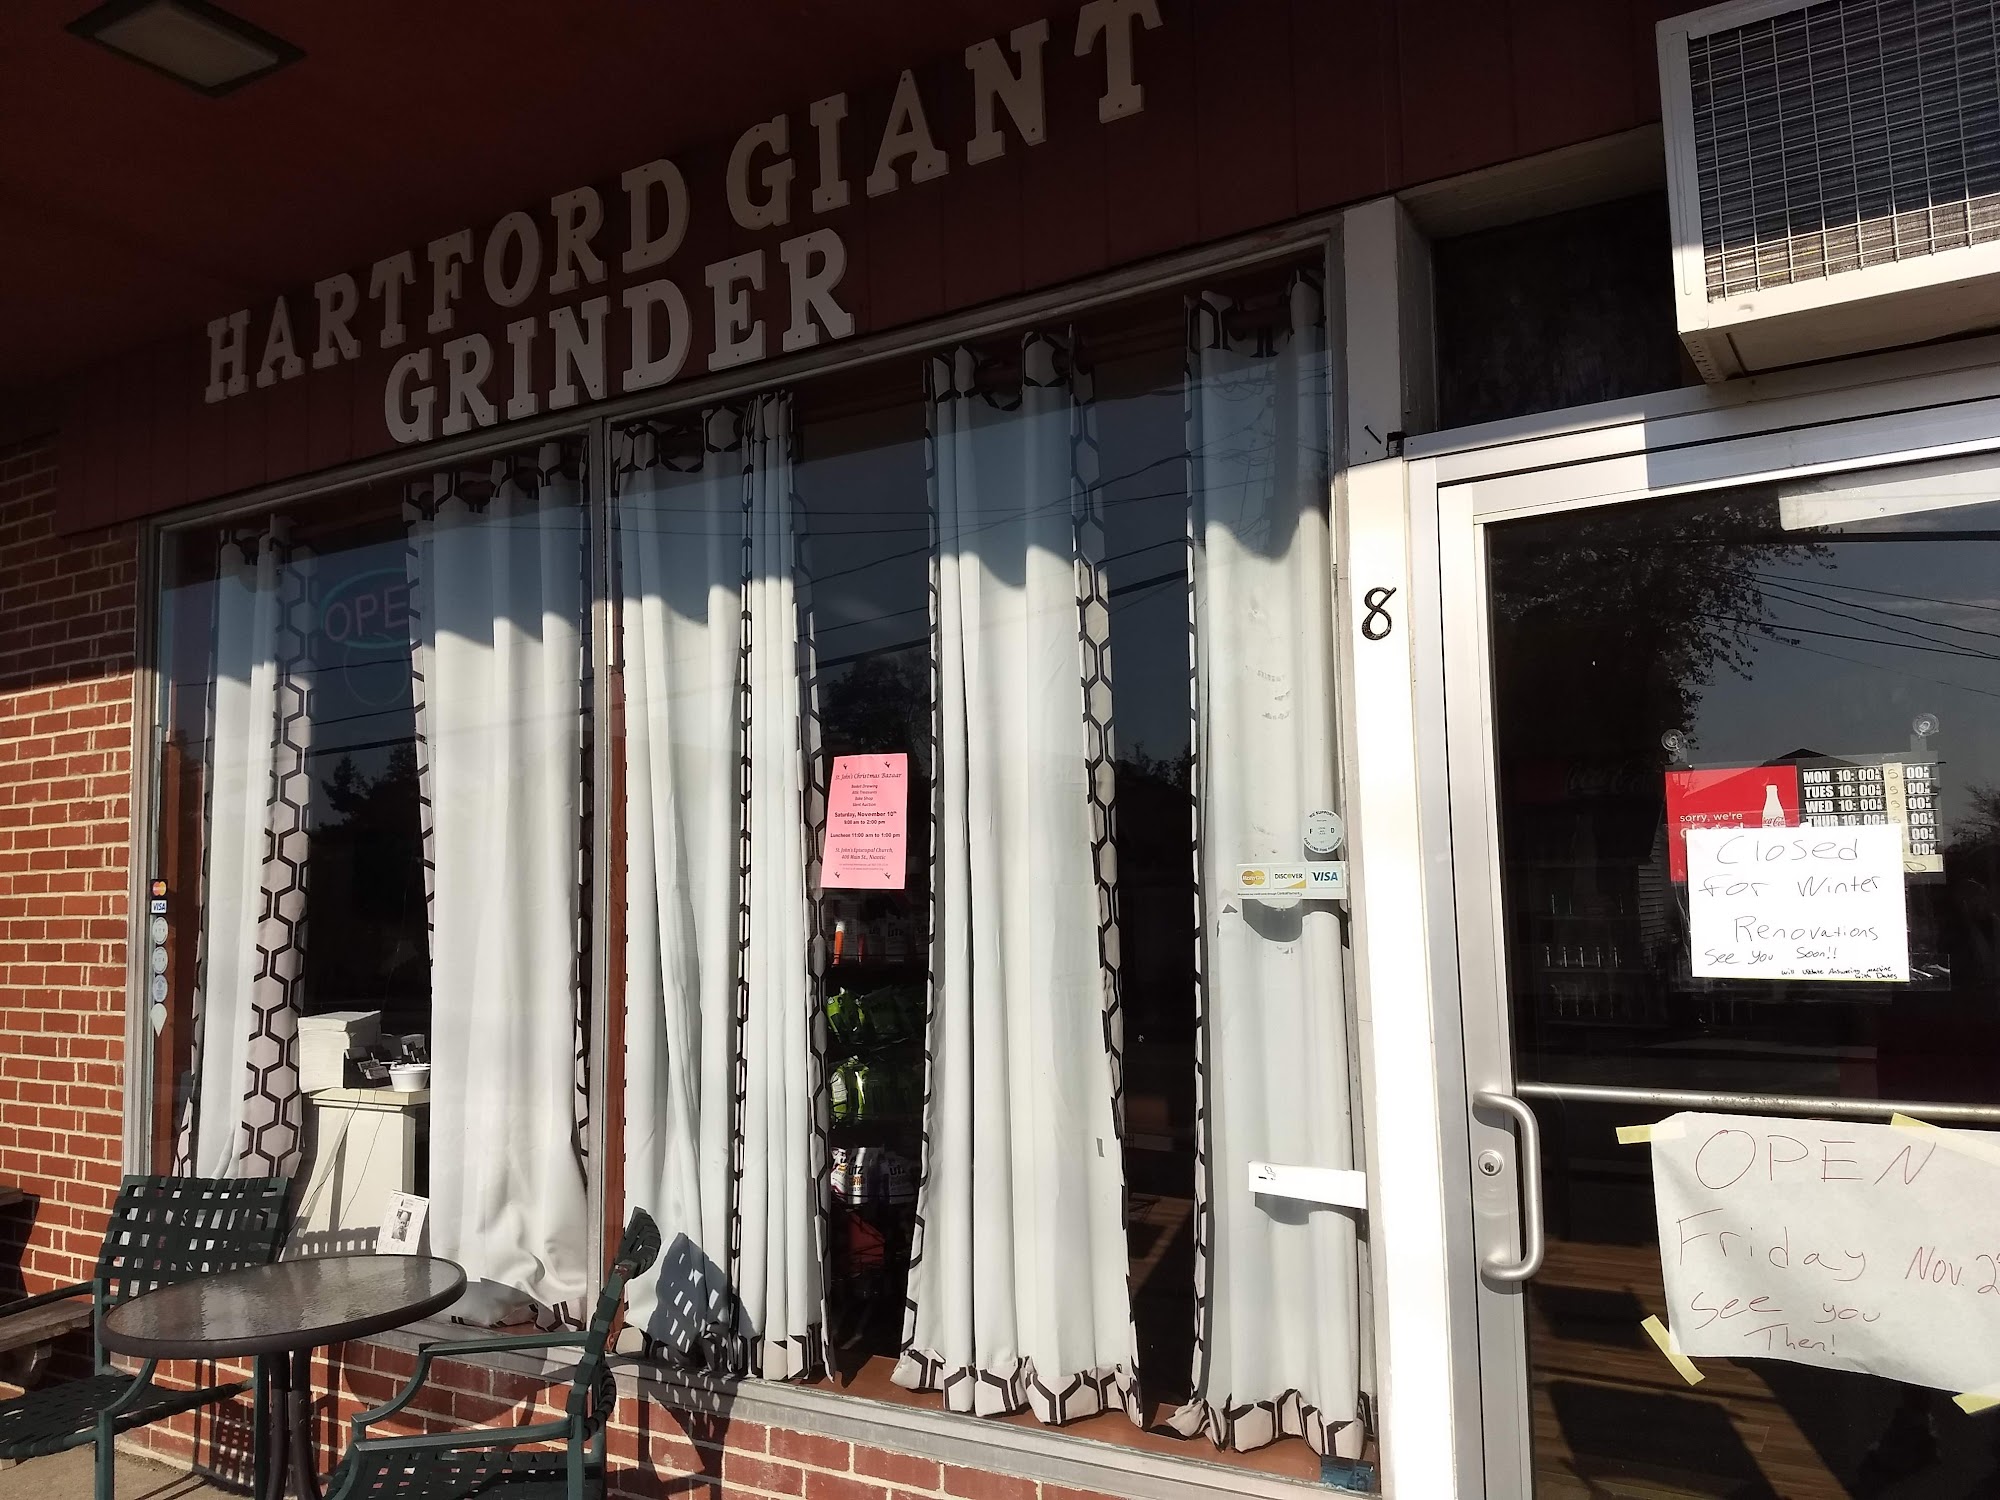 Hartford Giant Grinder